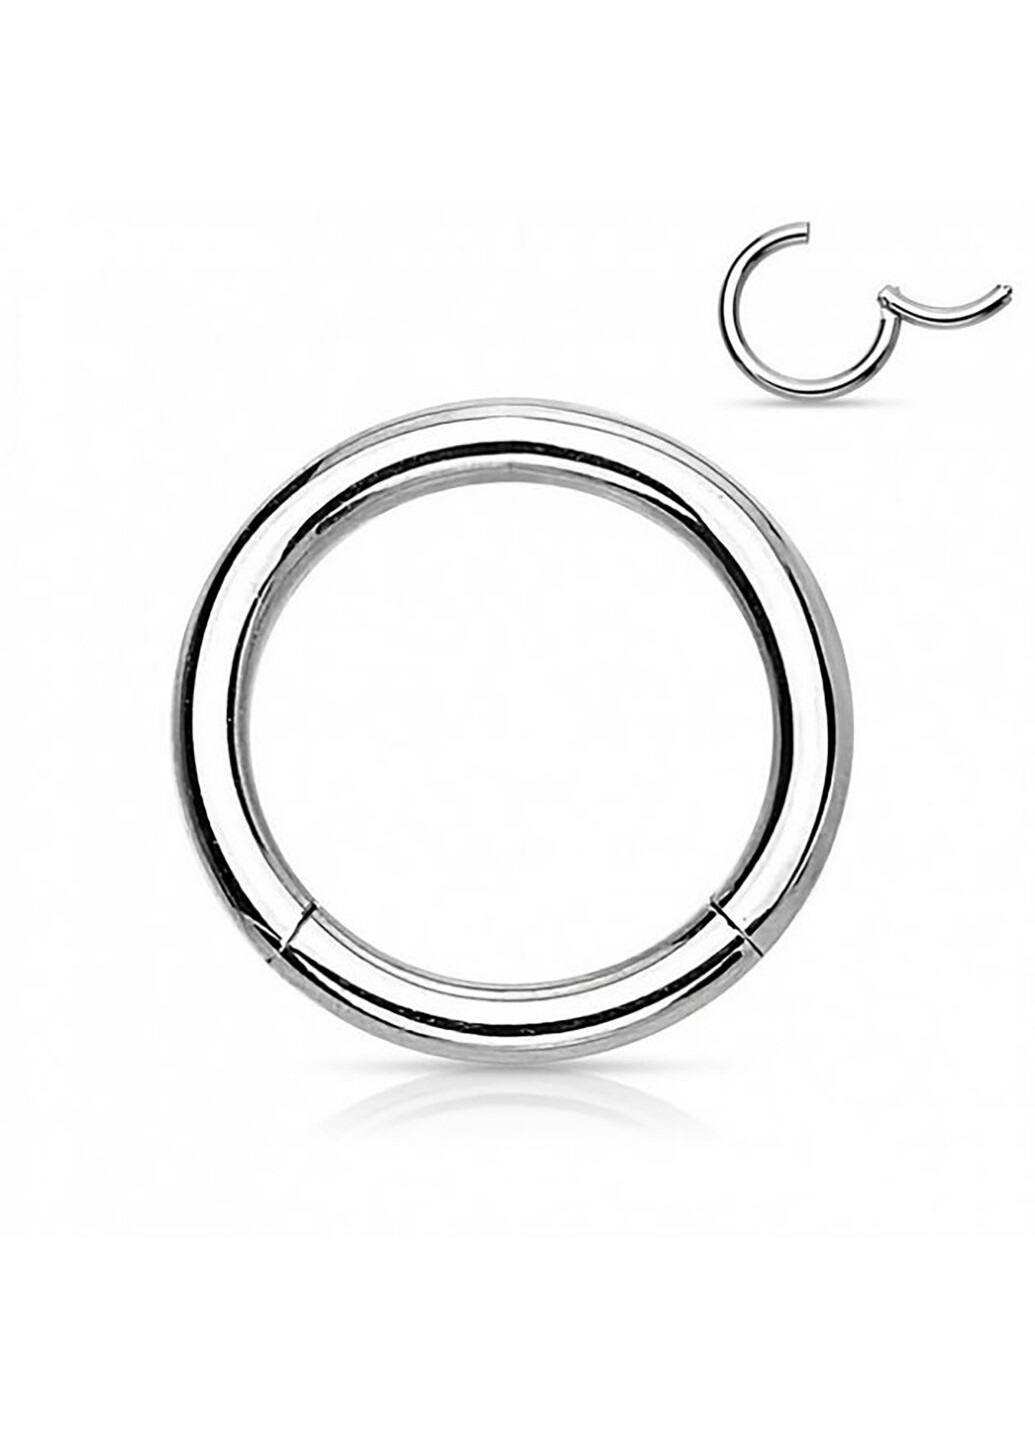 Универсальное кольцо - кликер из стали бренда PiercedFish диаметром 8 мм, толщиной 1,2 мм Spikes (257898140)